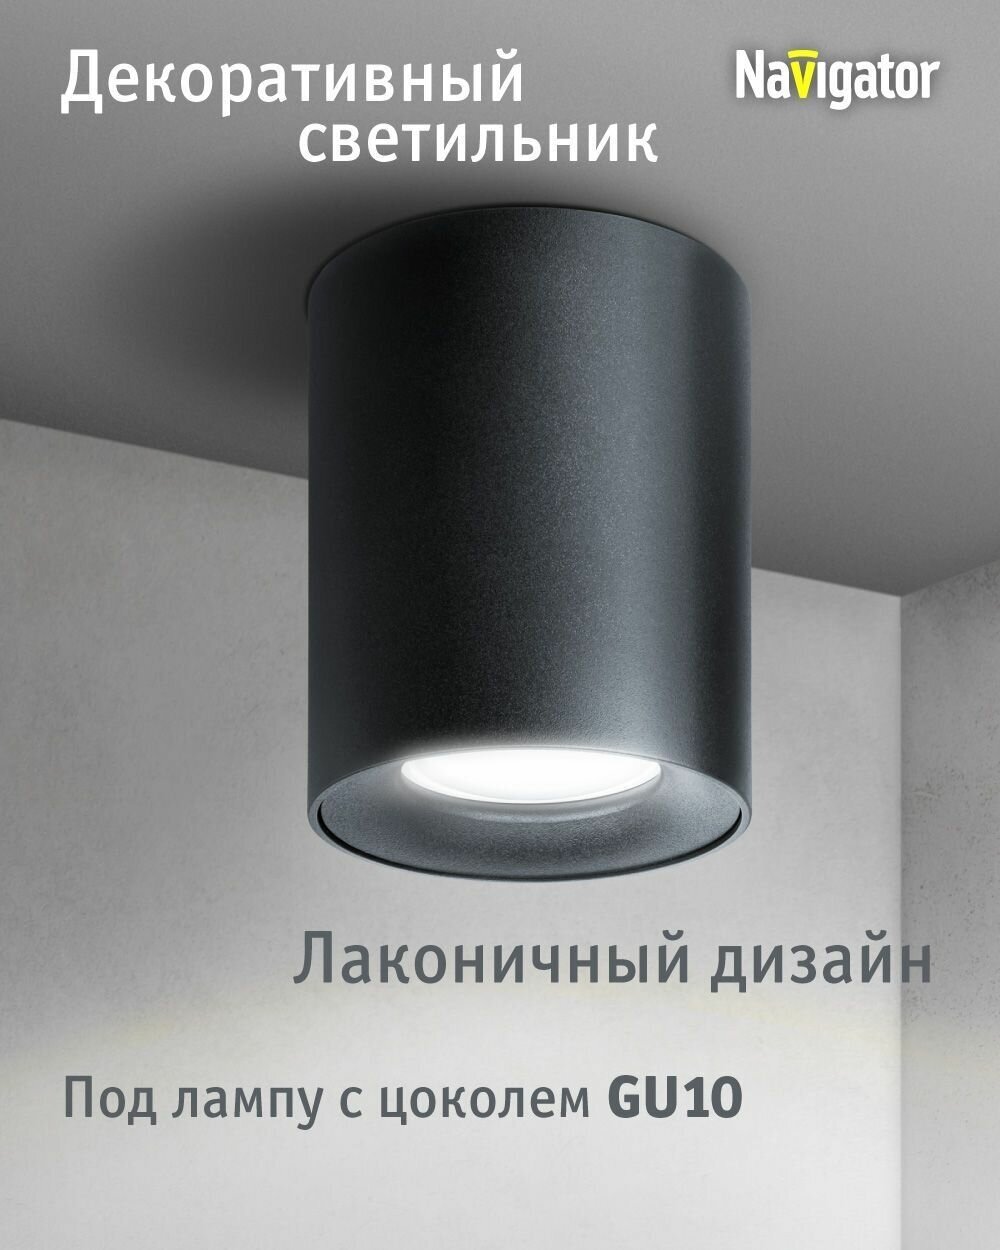 Декоративный светильник Navigator 93 327 накладной для ламп с цоколем GU10, черный